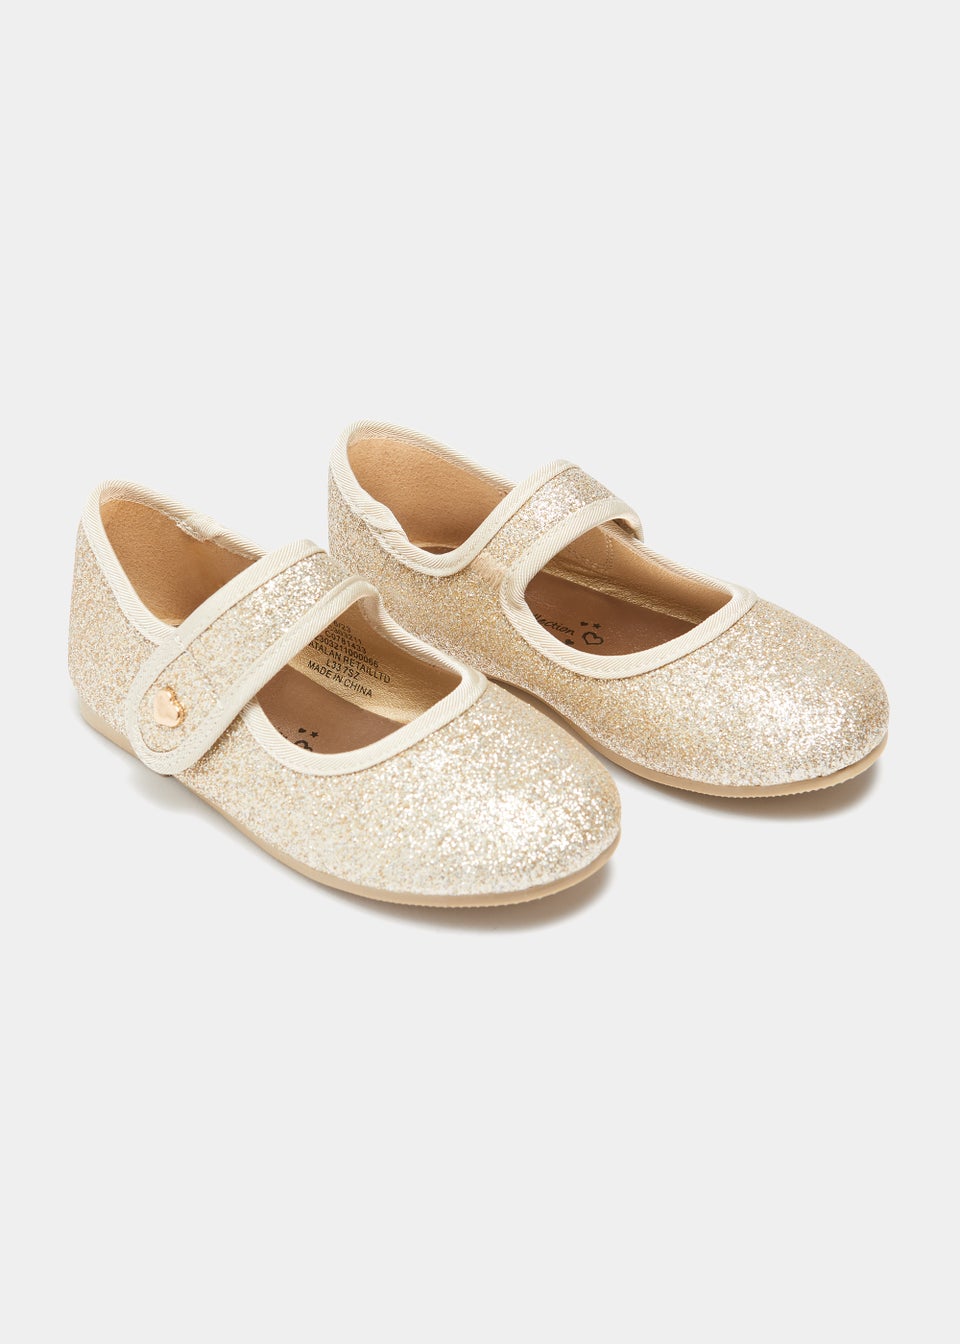 Girls Gold Glitter Ballet Shoes (Younger 4-Older 2)